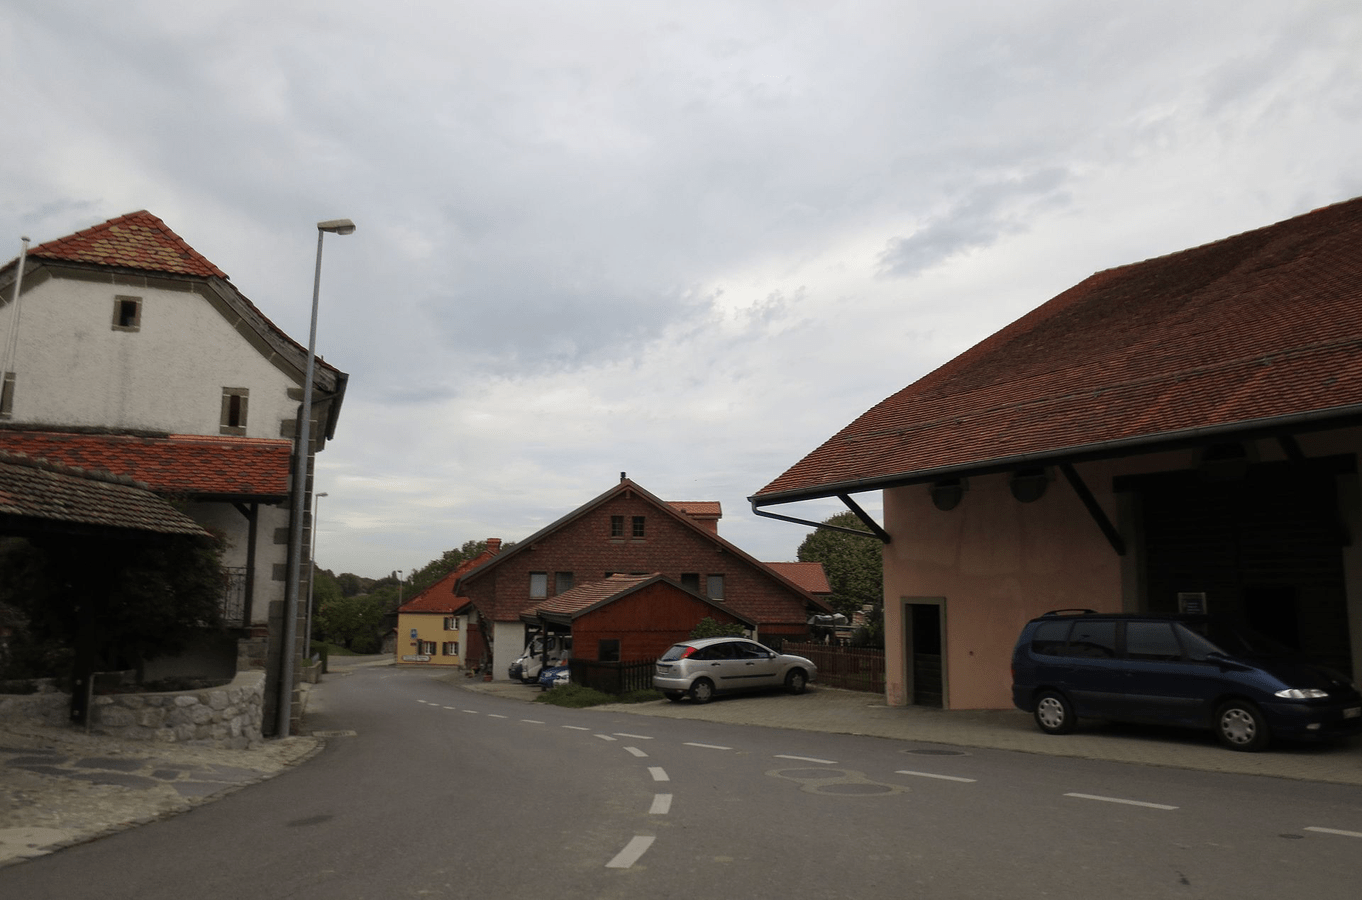 Corcelles-le-Jorat, Canton of Vaud